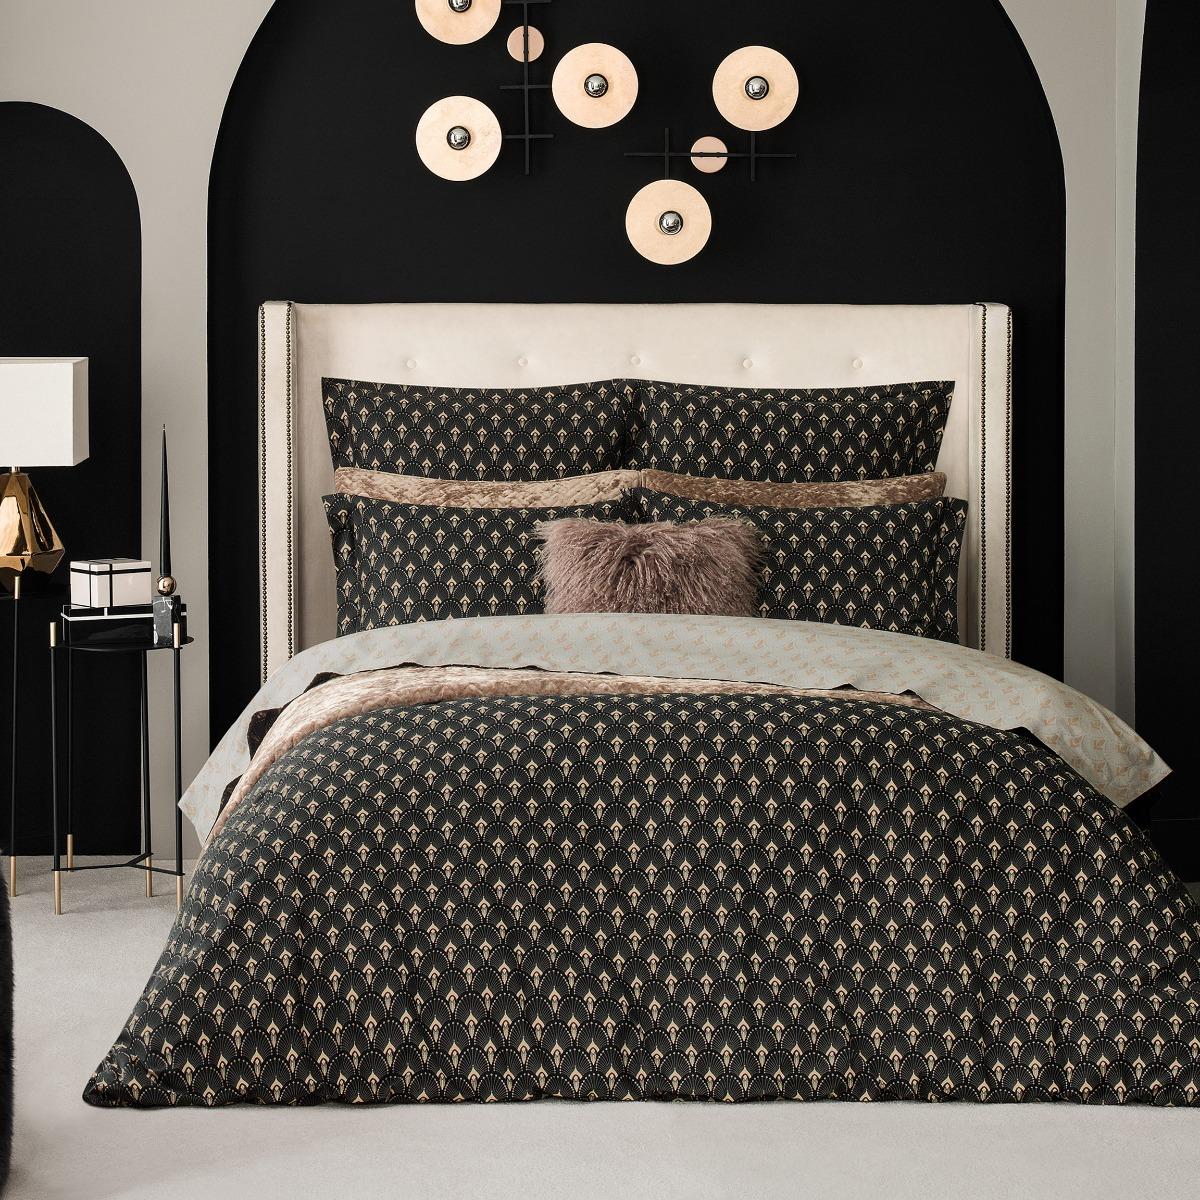 Комплект постельного белья Togas Ландер чёрный с серым Кинг сайз, цвет серый, размер Кинг сайз - фото 2